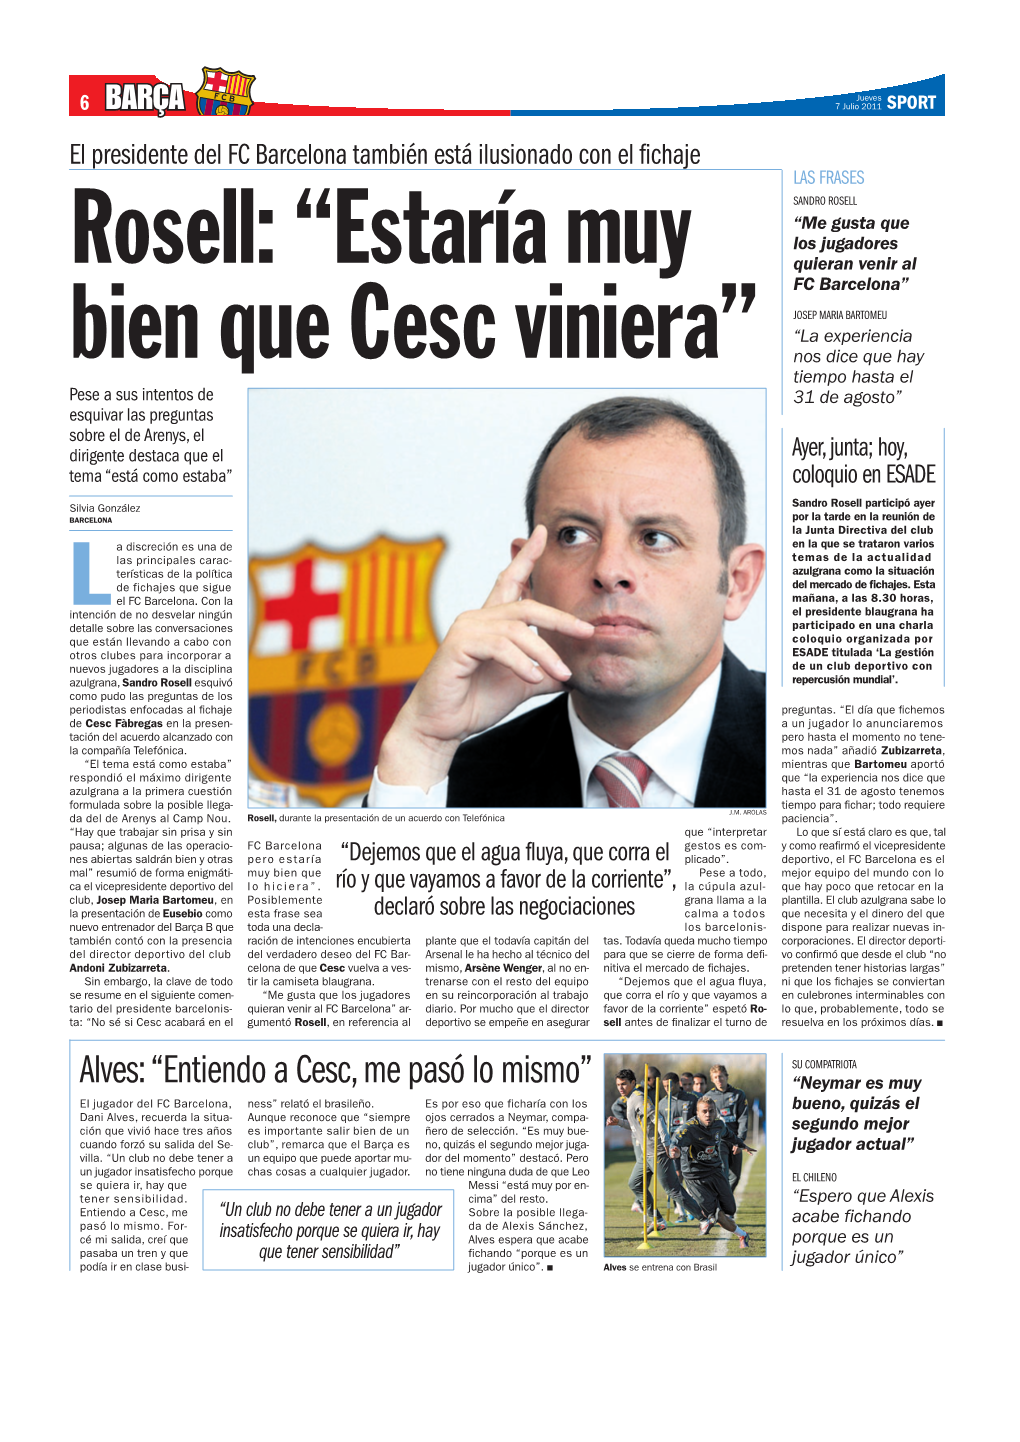 ROSELL “Me Gusta Que Los Jugadores Rosell: “Estaría Muy Quieran Venir Al FC Barcelona”